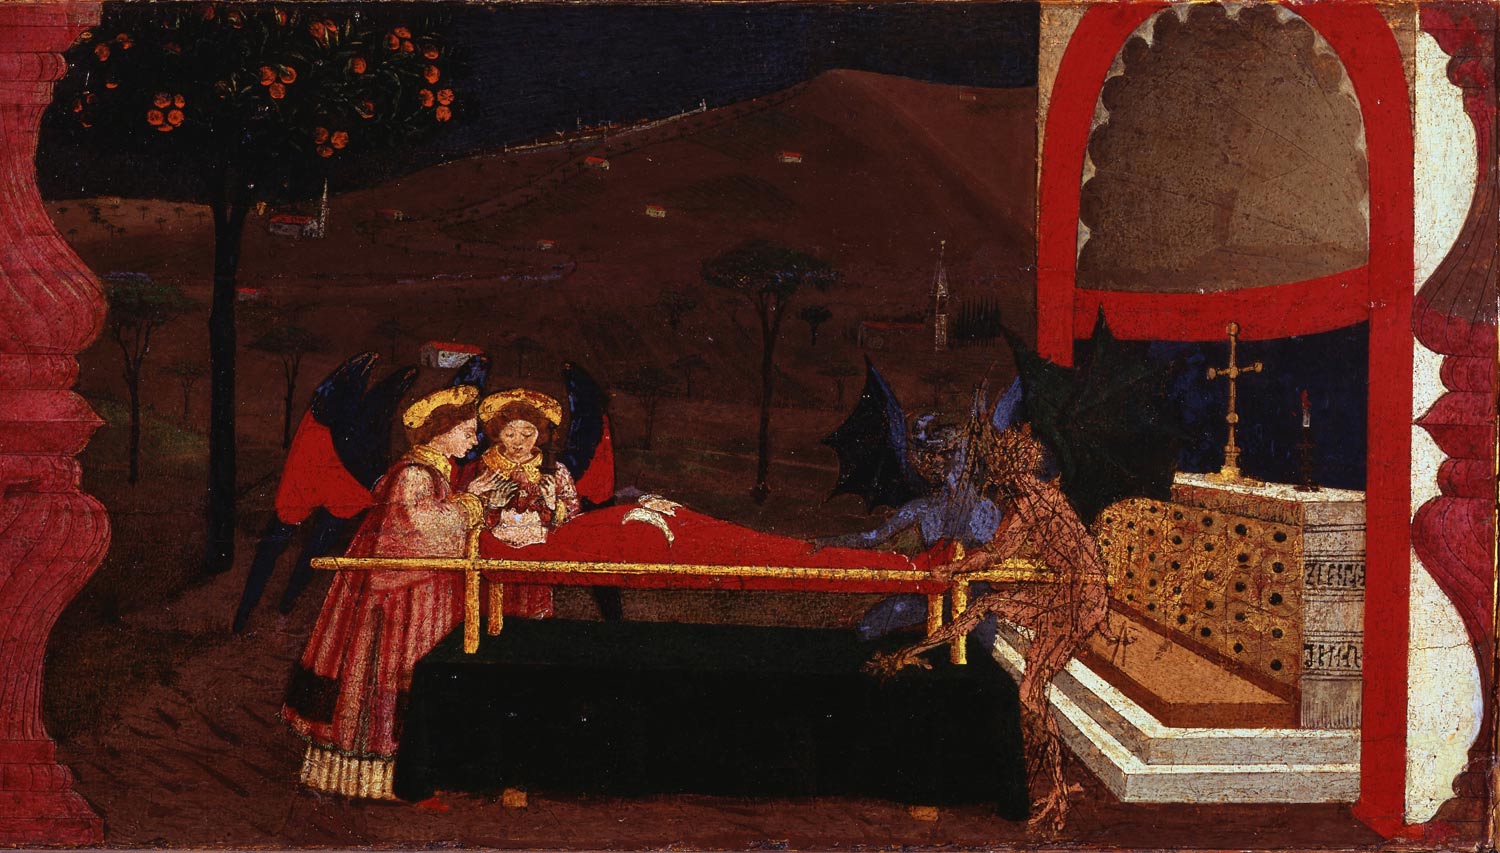 Paolo Uccello, Miracolo dell'ostia profanata, sesto episodio (1467-1468; tempera su tavola; Urbino, Galleria Nazionale delle Marche)